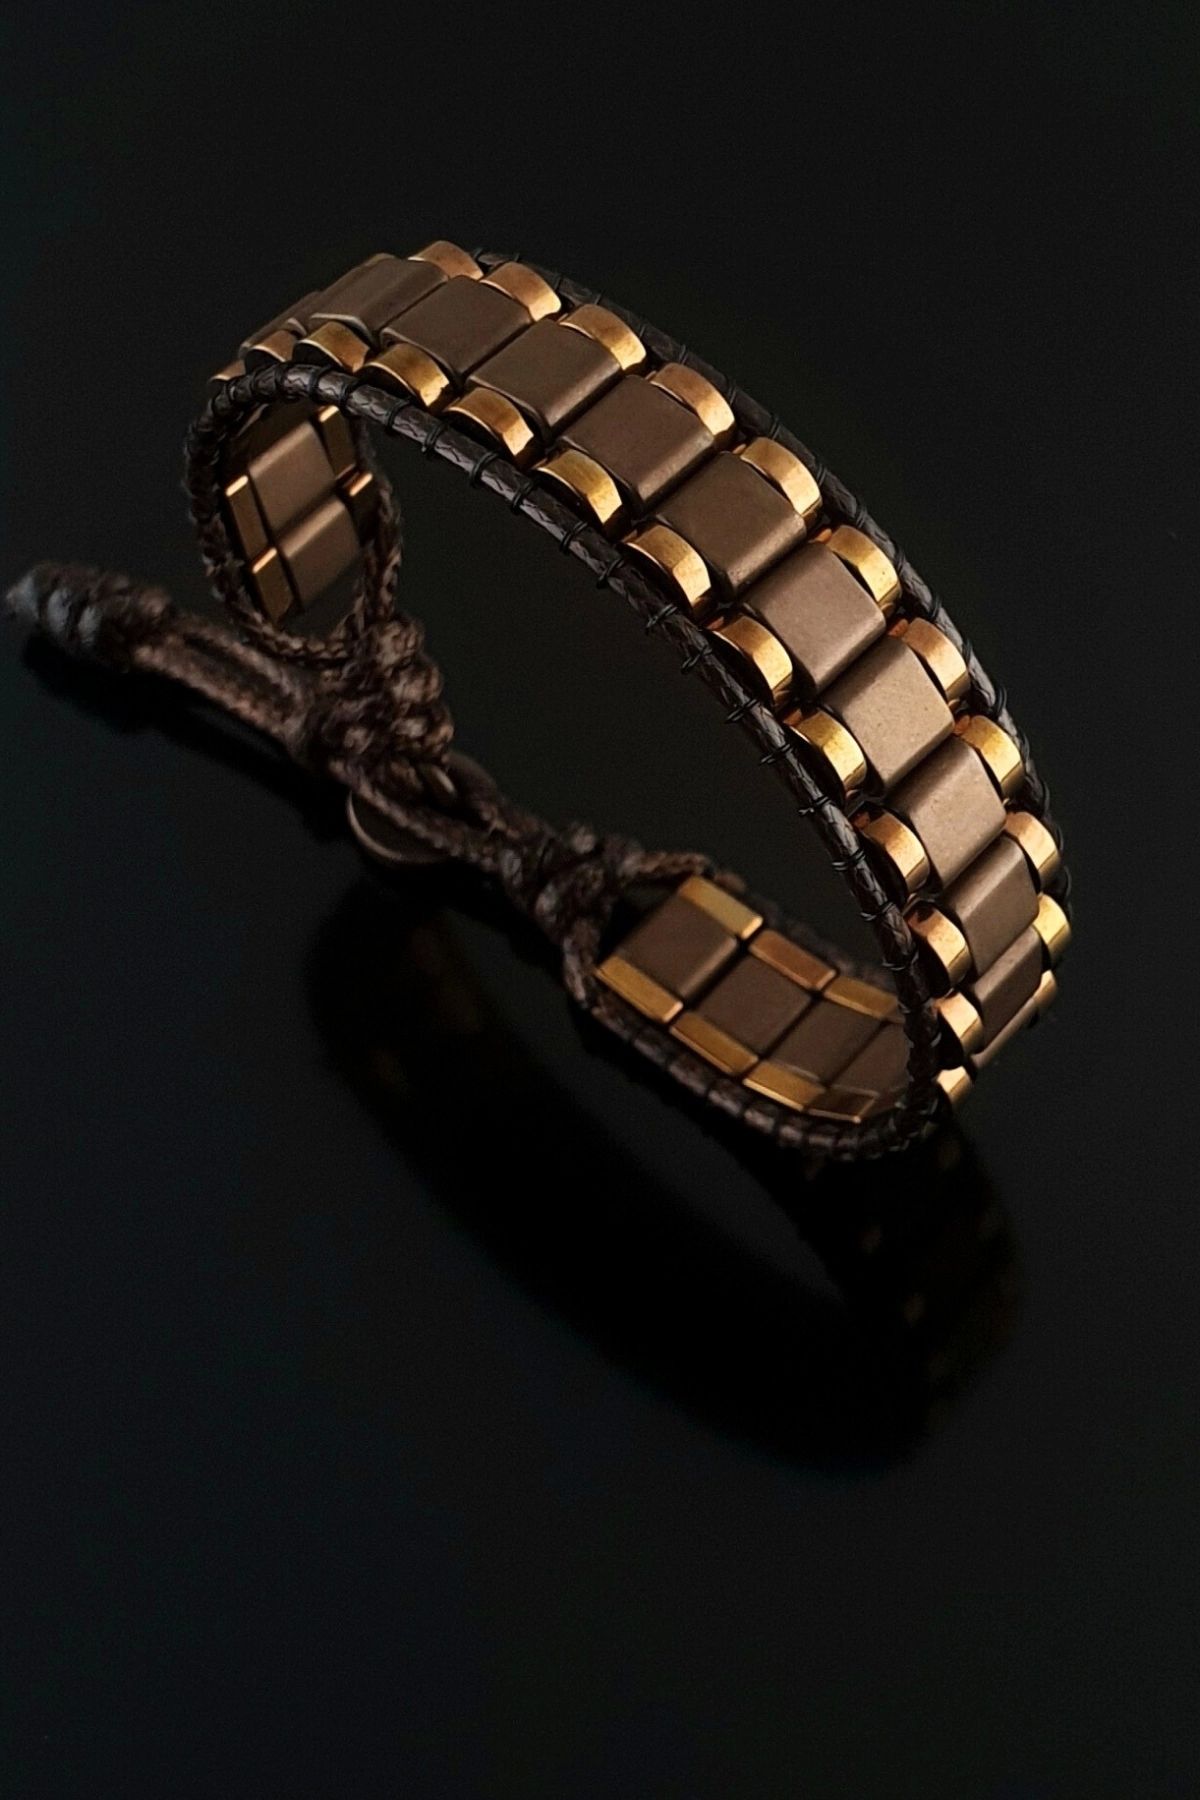 Seven Art Jewelry Hematit Taşı Kahverengi Bakır Kenar Şeritli Bileklik